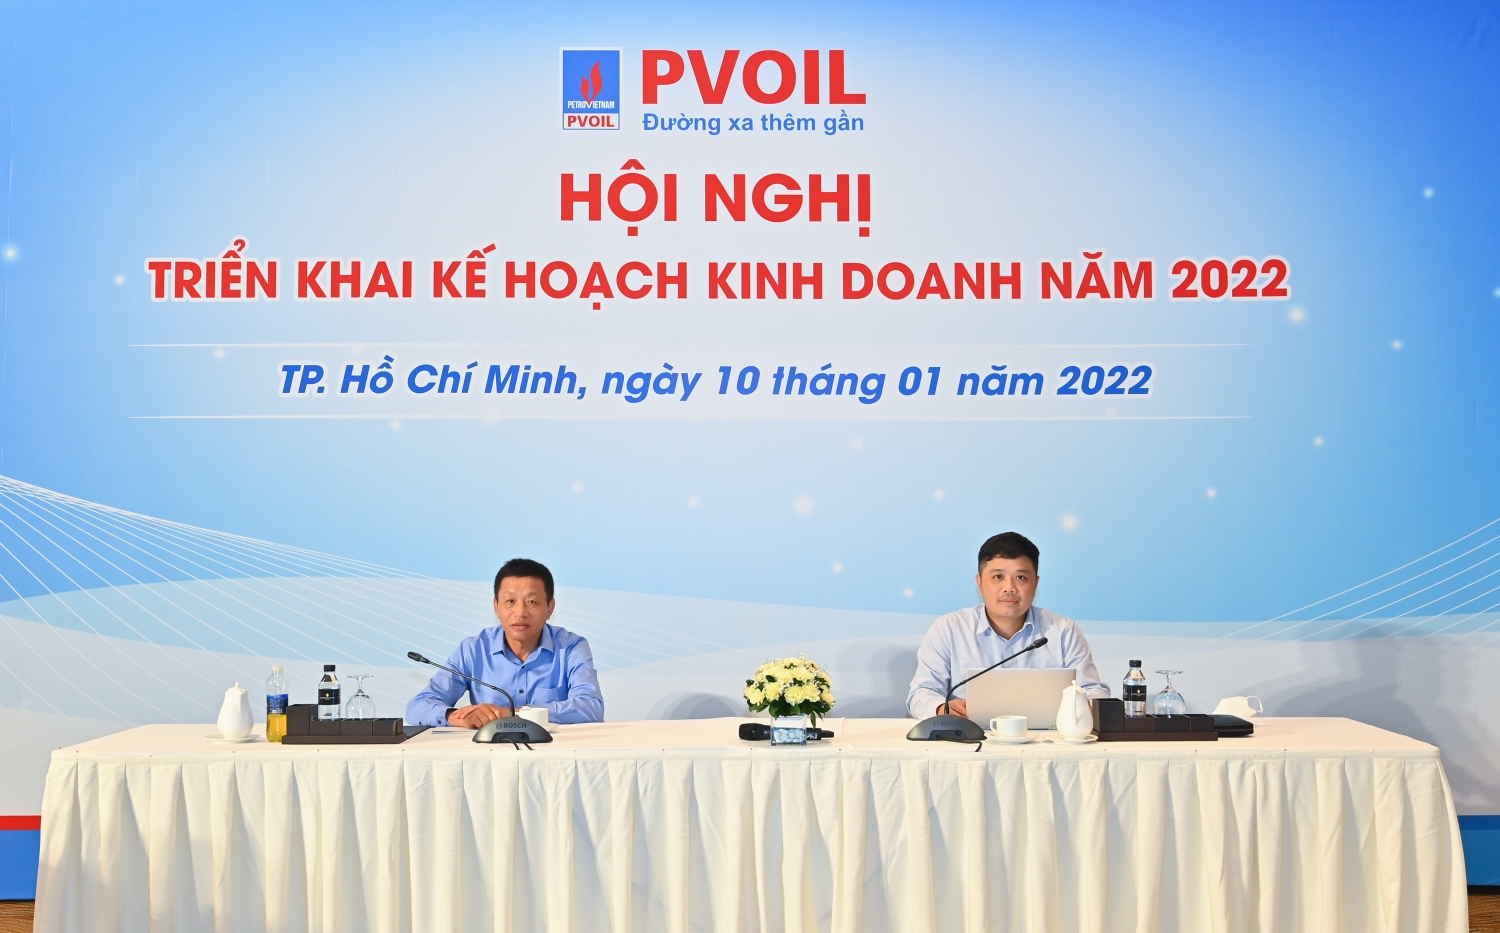 Ông Đoàn Văn Nhuộm – Tổng Giám đốc Tổng công ty (bên trái) và ông Nguyễn Đăng Trình – Phó Tổng Giám đốc Tổng công ty (bên phải) chủ trì Hội nghị